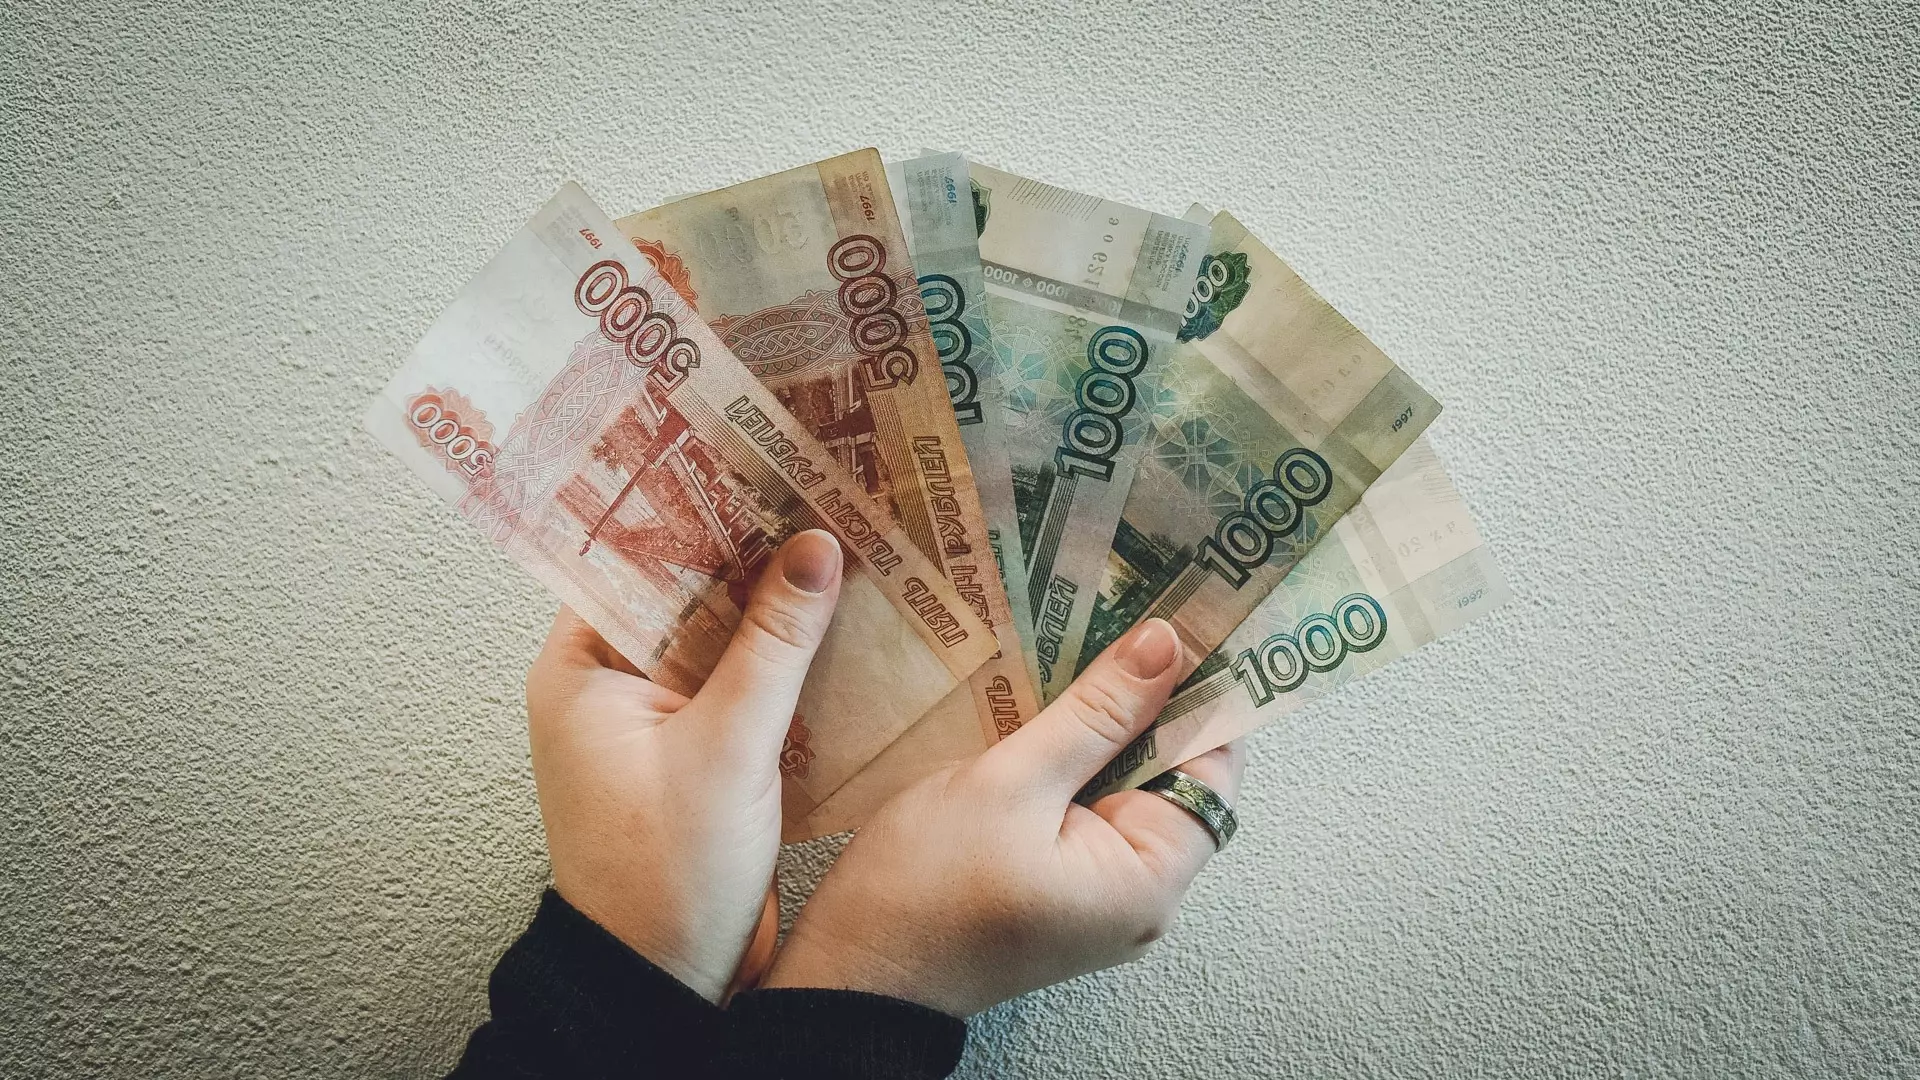 Активы самого "многоимущего" бизнесмена превышают 6 млрд рублей.